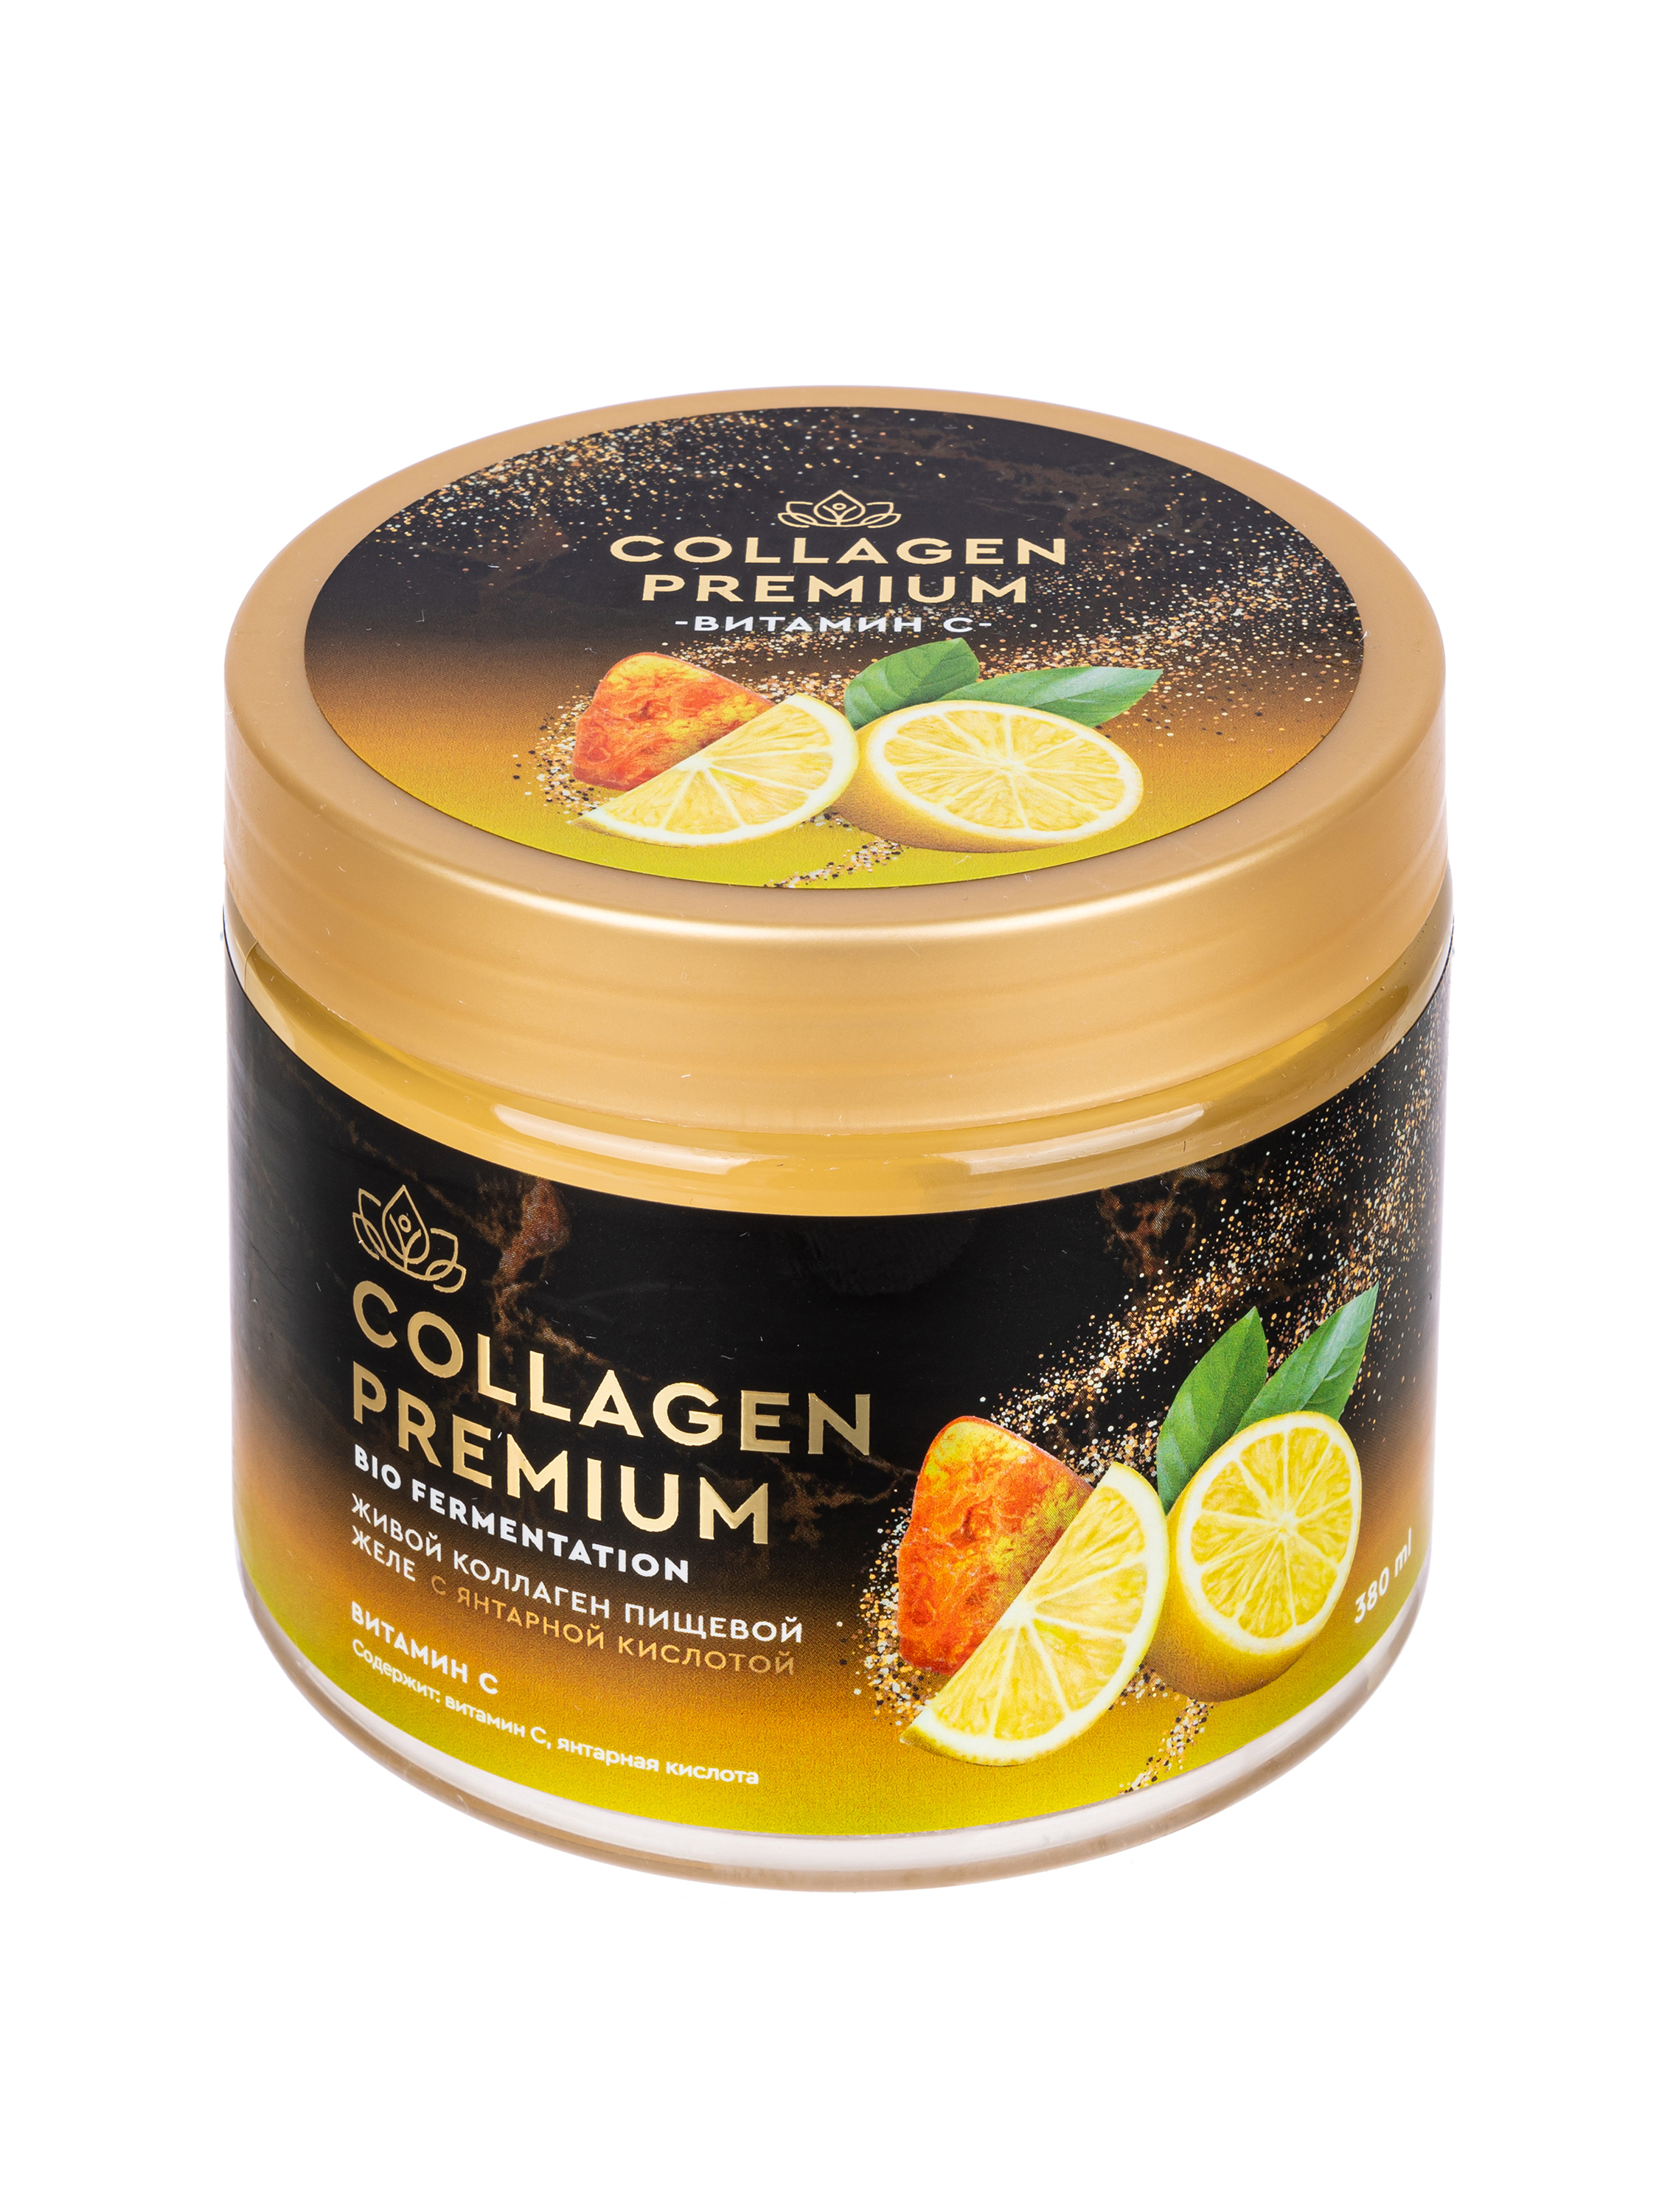 Collagen-premium c Янтарной кислотой и Витамином С 380 мл